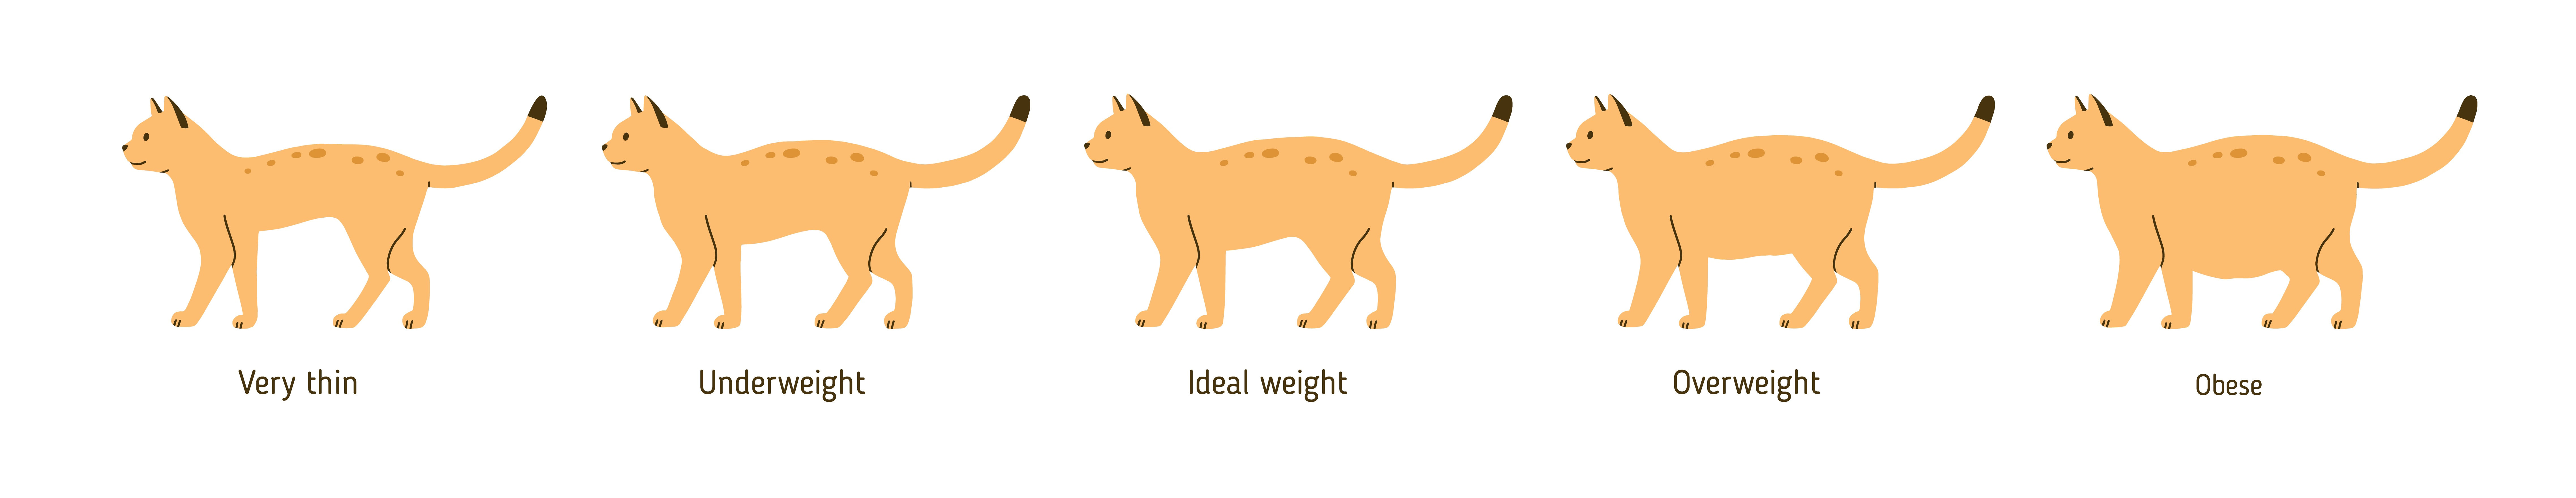 Overweight cat chart, Pflugerville Vet 